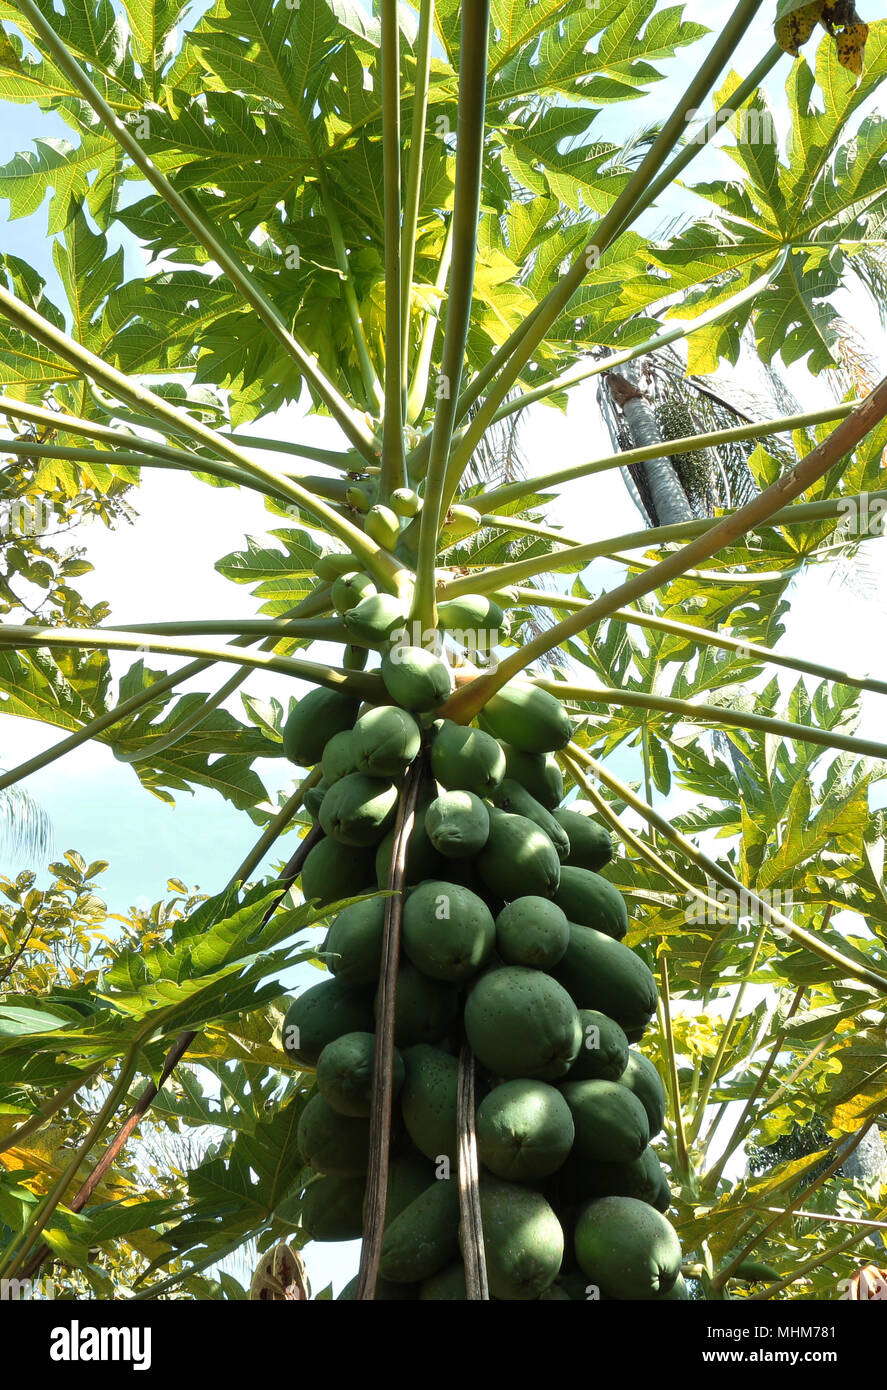 La papaya verde en el árbol Foto de stock